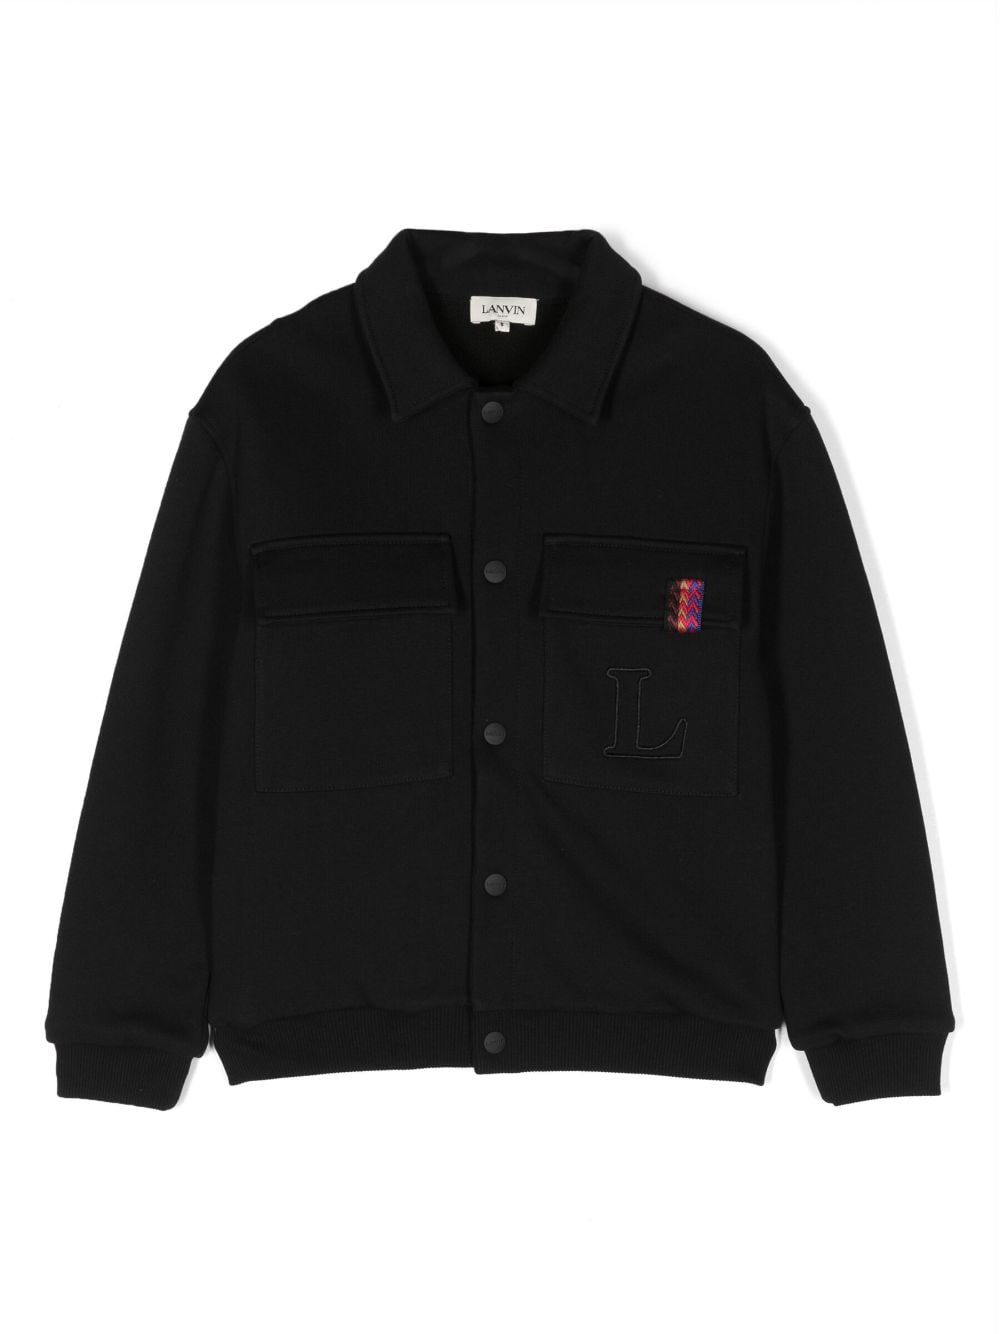 Lanvin Enfant Curb logo-embroidered bomber jacket - Black